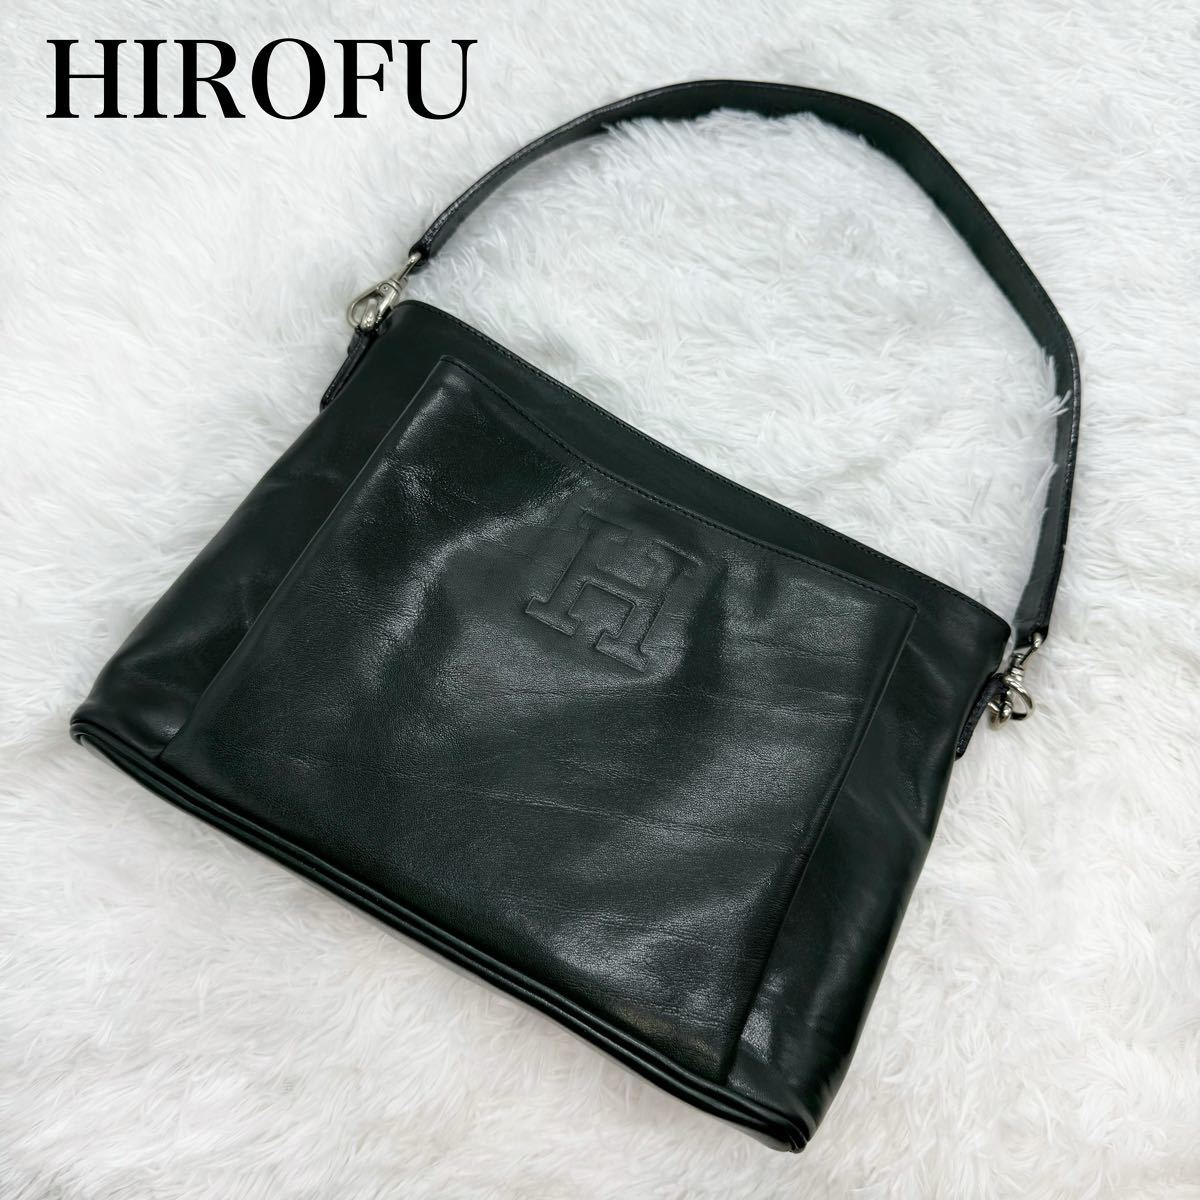  прекрасный товар!HIROFU Hirofu кожа сумка на плечо плечо .. Logo type вдавлено .